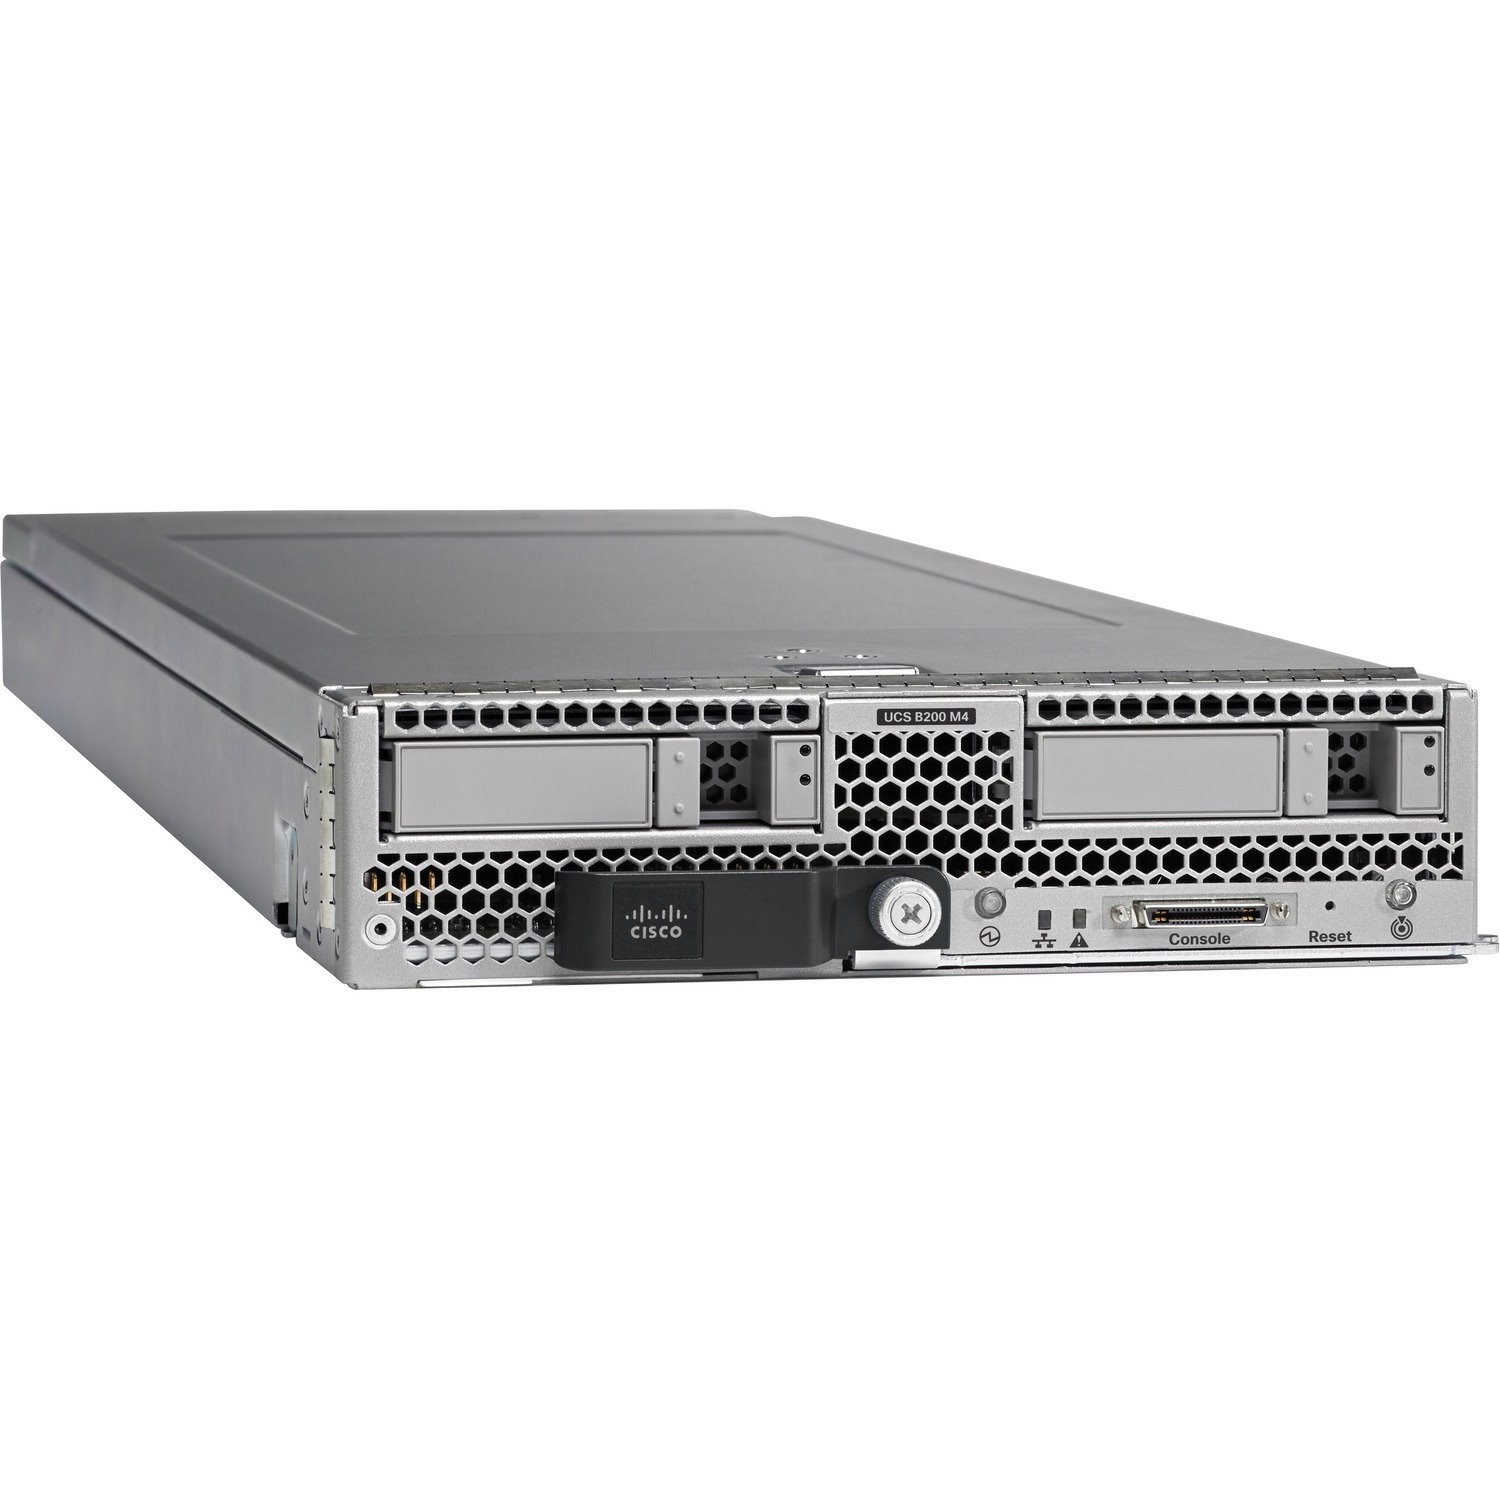 Cisco B200 M4 Blade Server - 2 x Intel Xeon E5-2698 v3 2.30 GHz - 256 GB RAM - Serial Attached SCSI (SAS), Serial ATA Controller